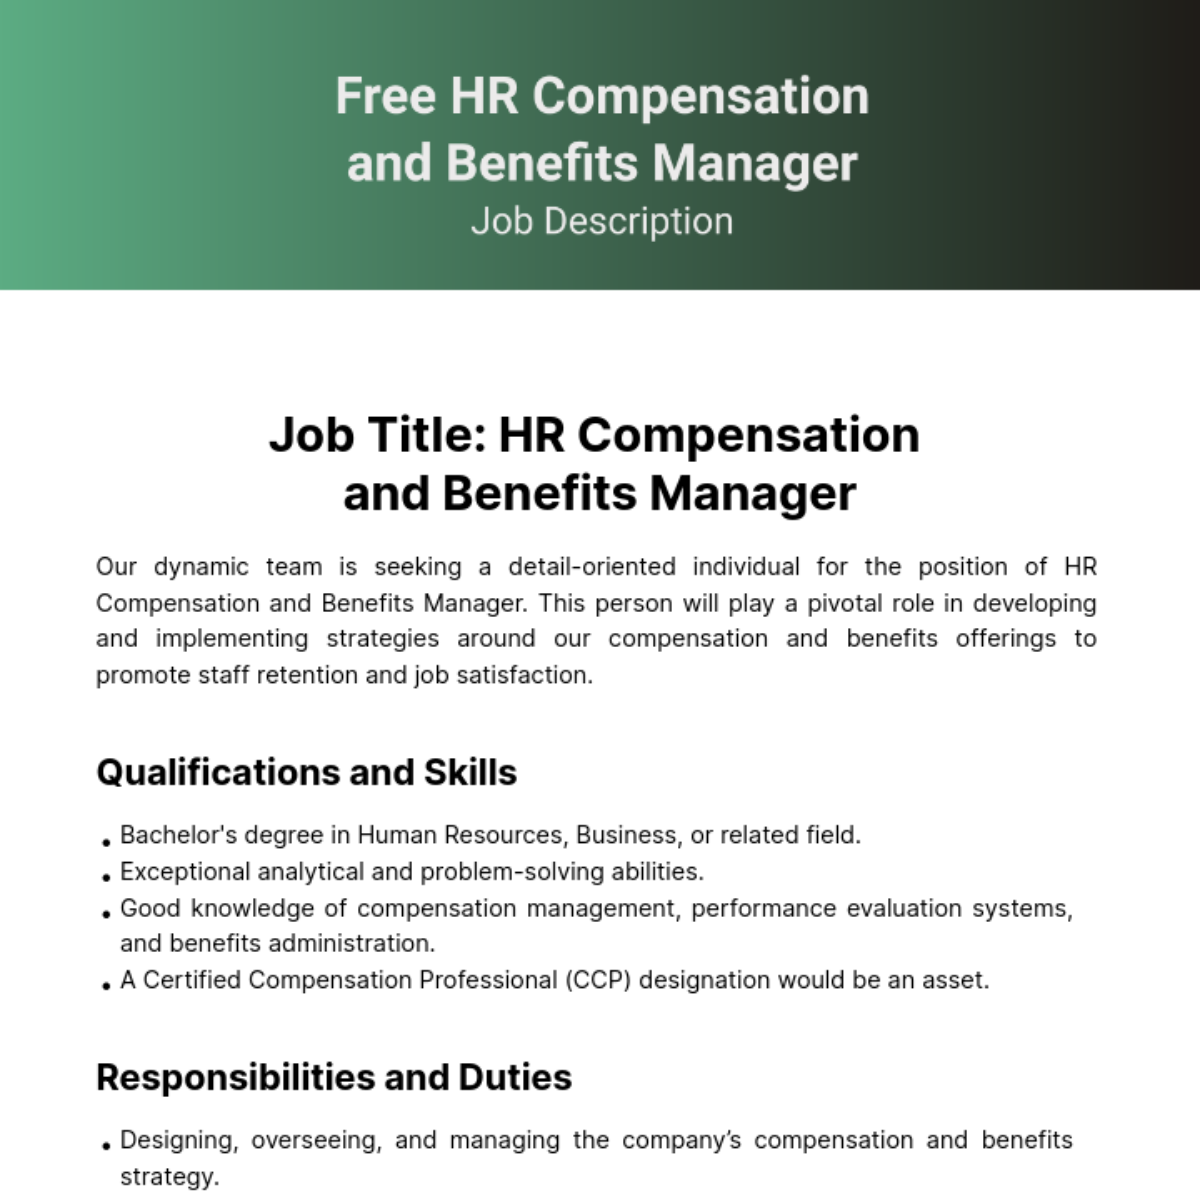 Human Resources (HR) Compensation and Benefits Job Description Template